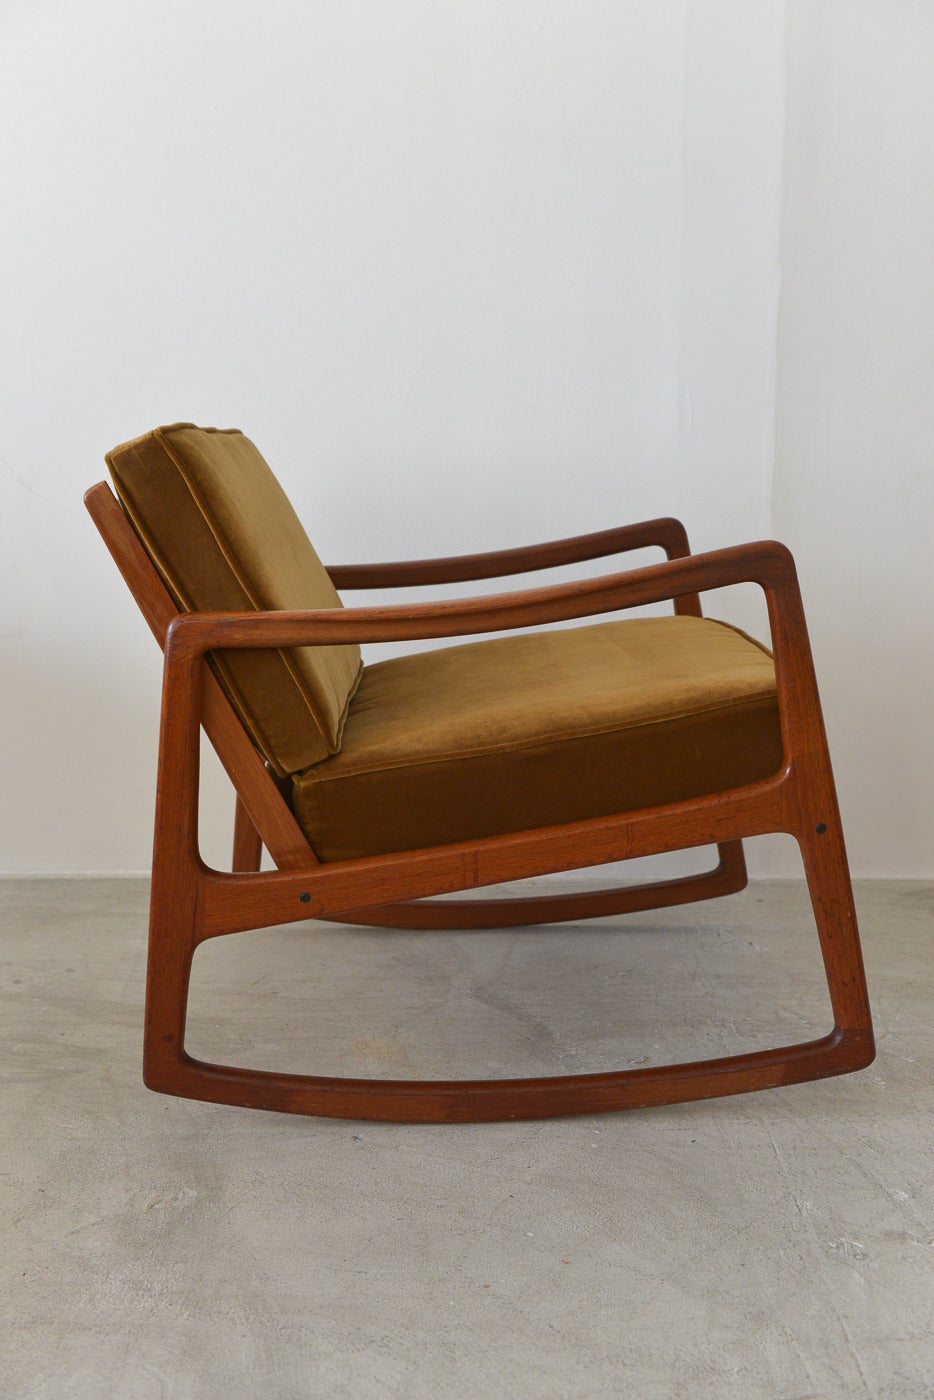 Mid-Century Modern Danish Modern Teak Rocking Chair by Ole Wanscher